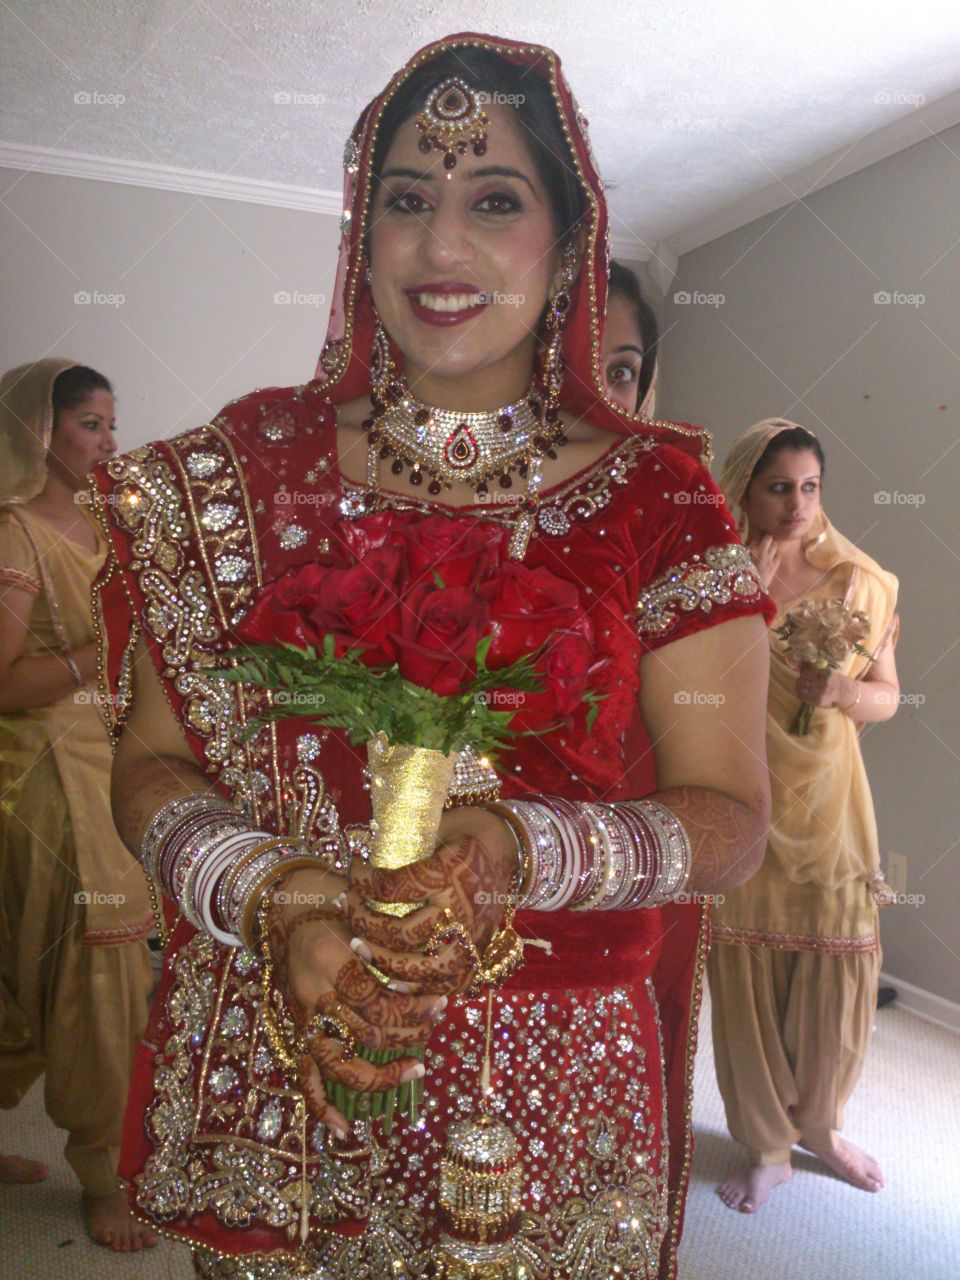 Indian wedding. My best friend